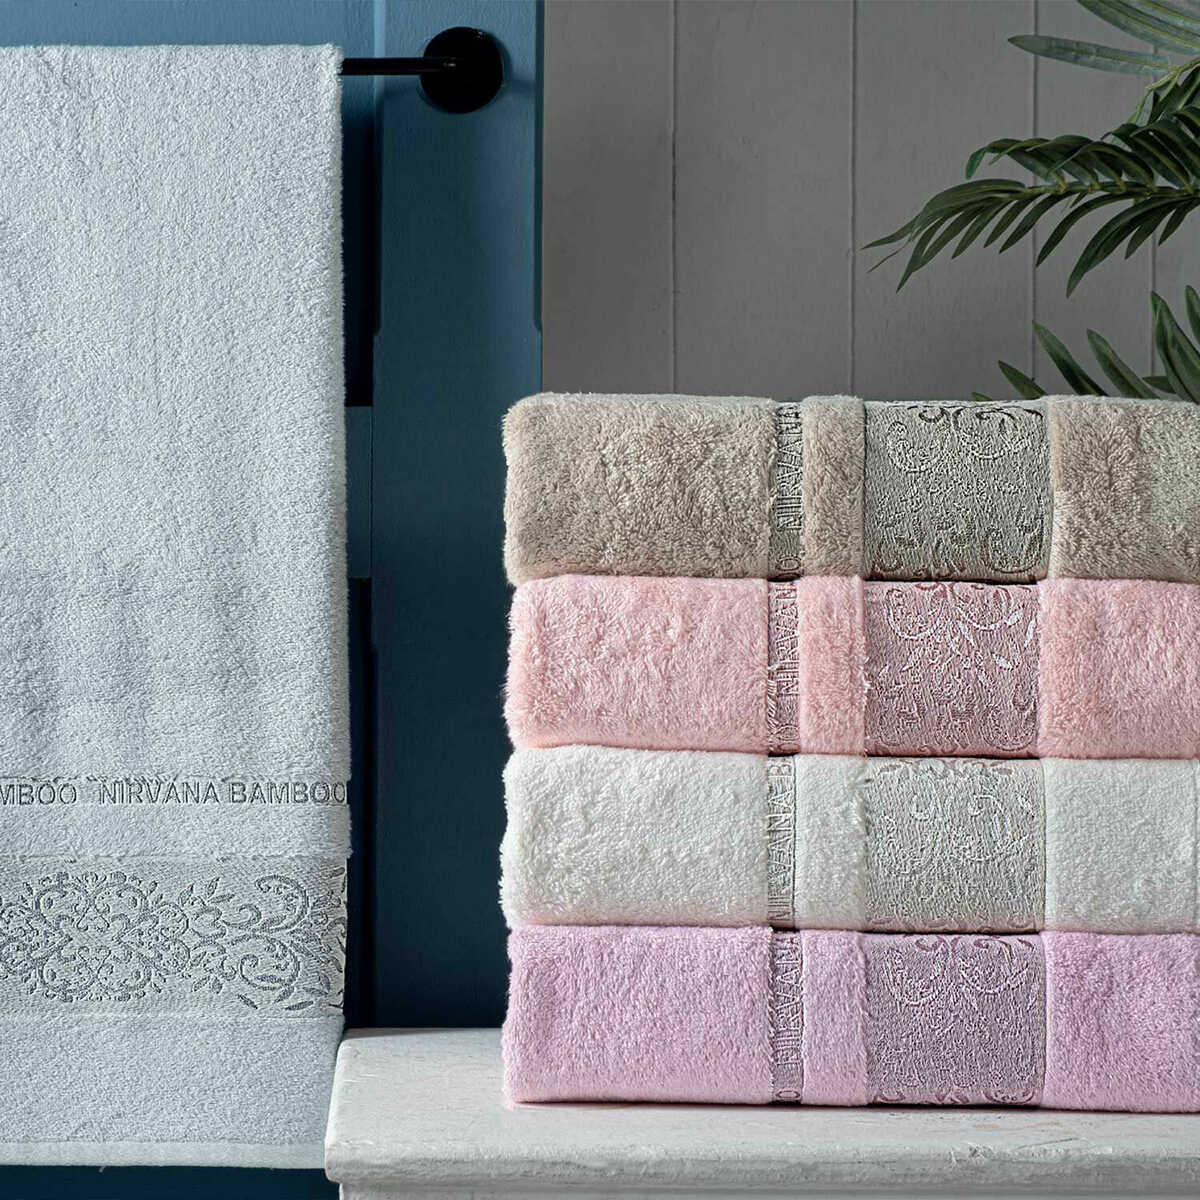 Maxstyle Nirvana Bamboo Gray Towel 70X140 cm